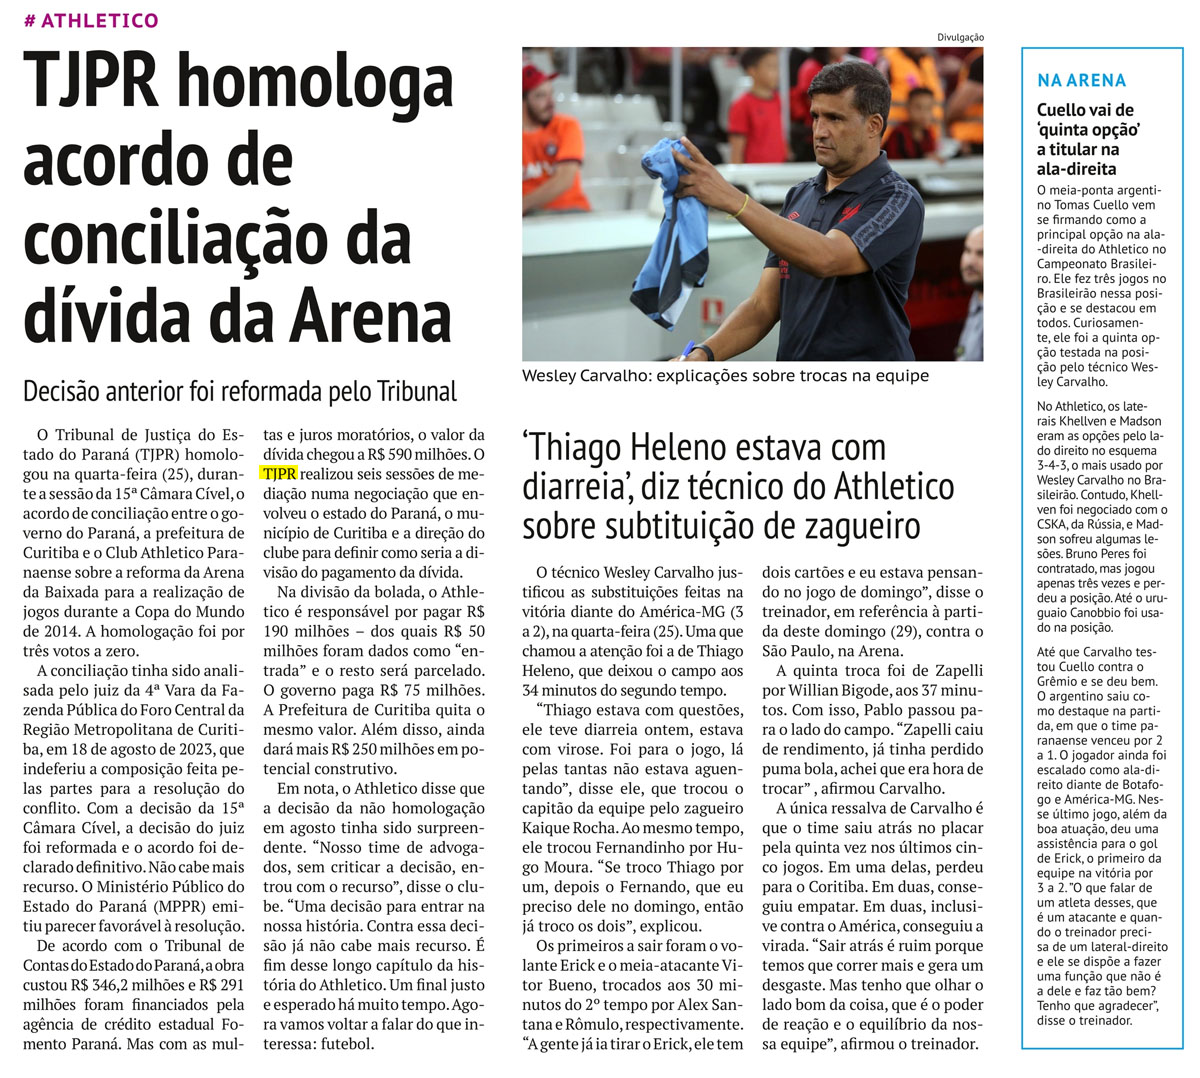 TJPR homologa acordo de conciliação da dívida da Arena - image 1